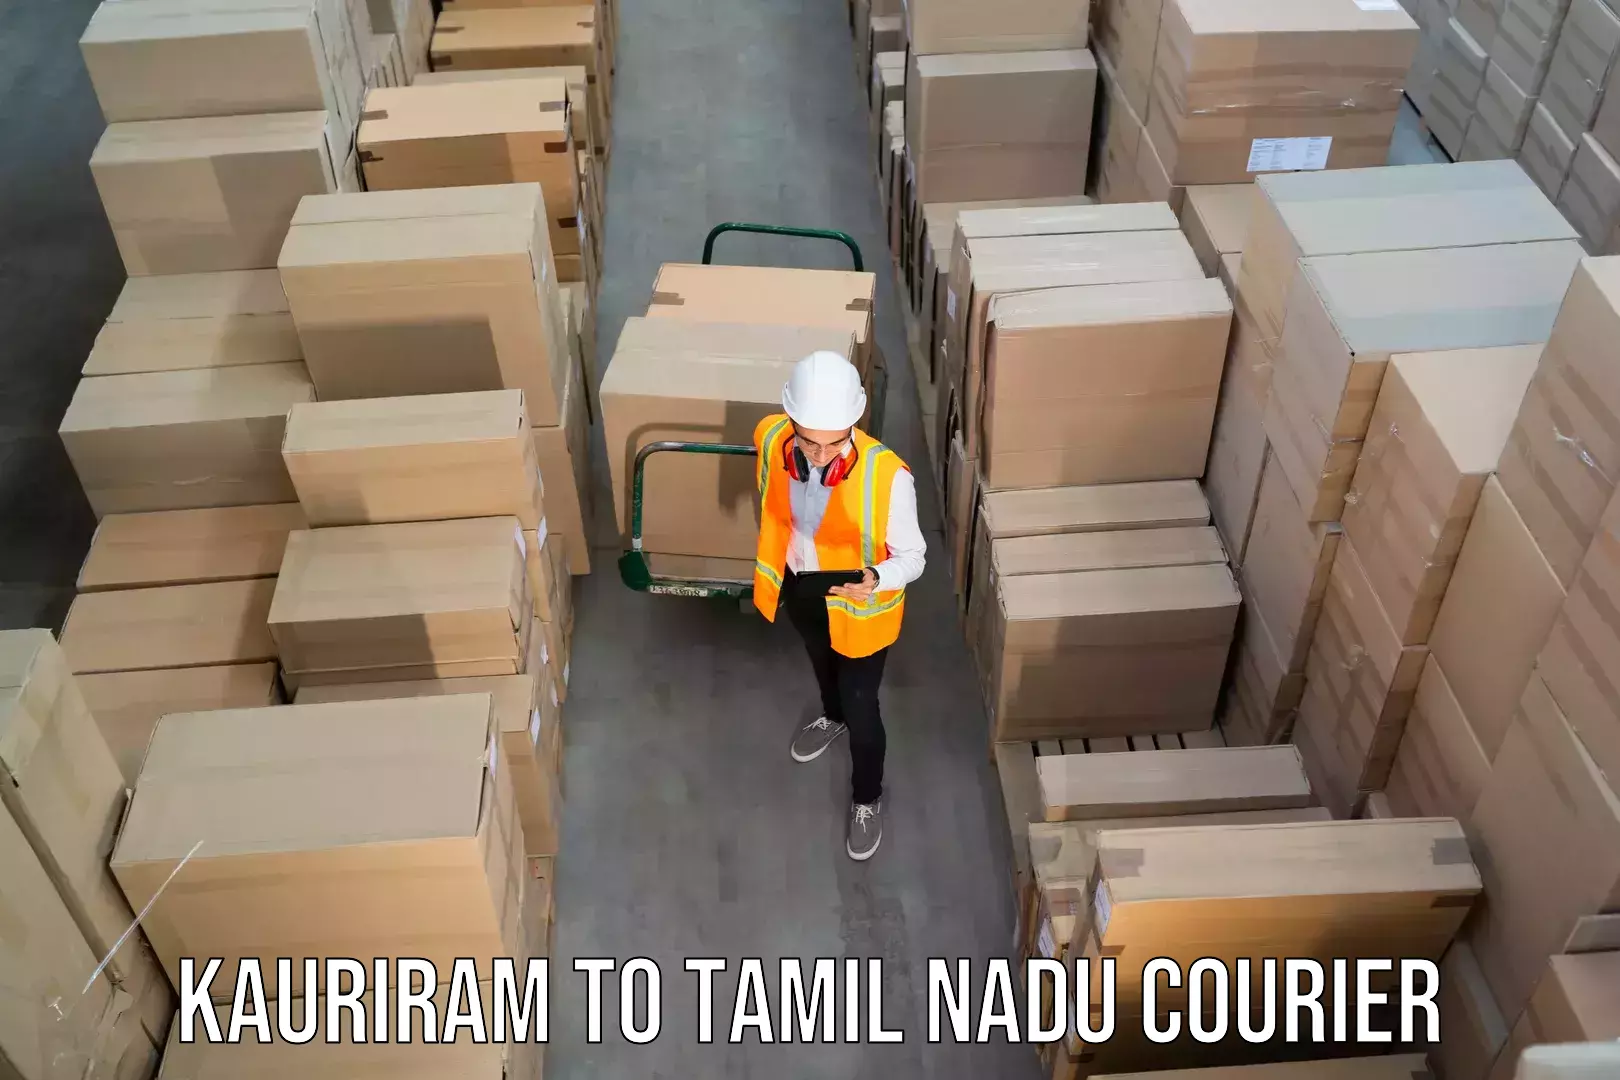 Reliable courier service in Kauriram to IIIT Tiruchirappalli